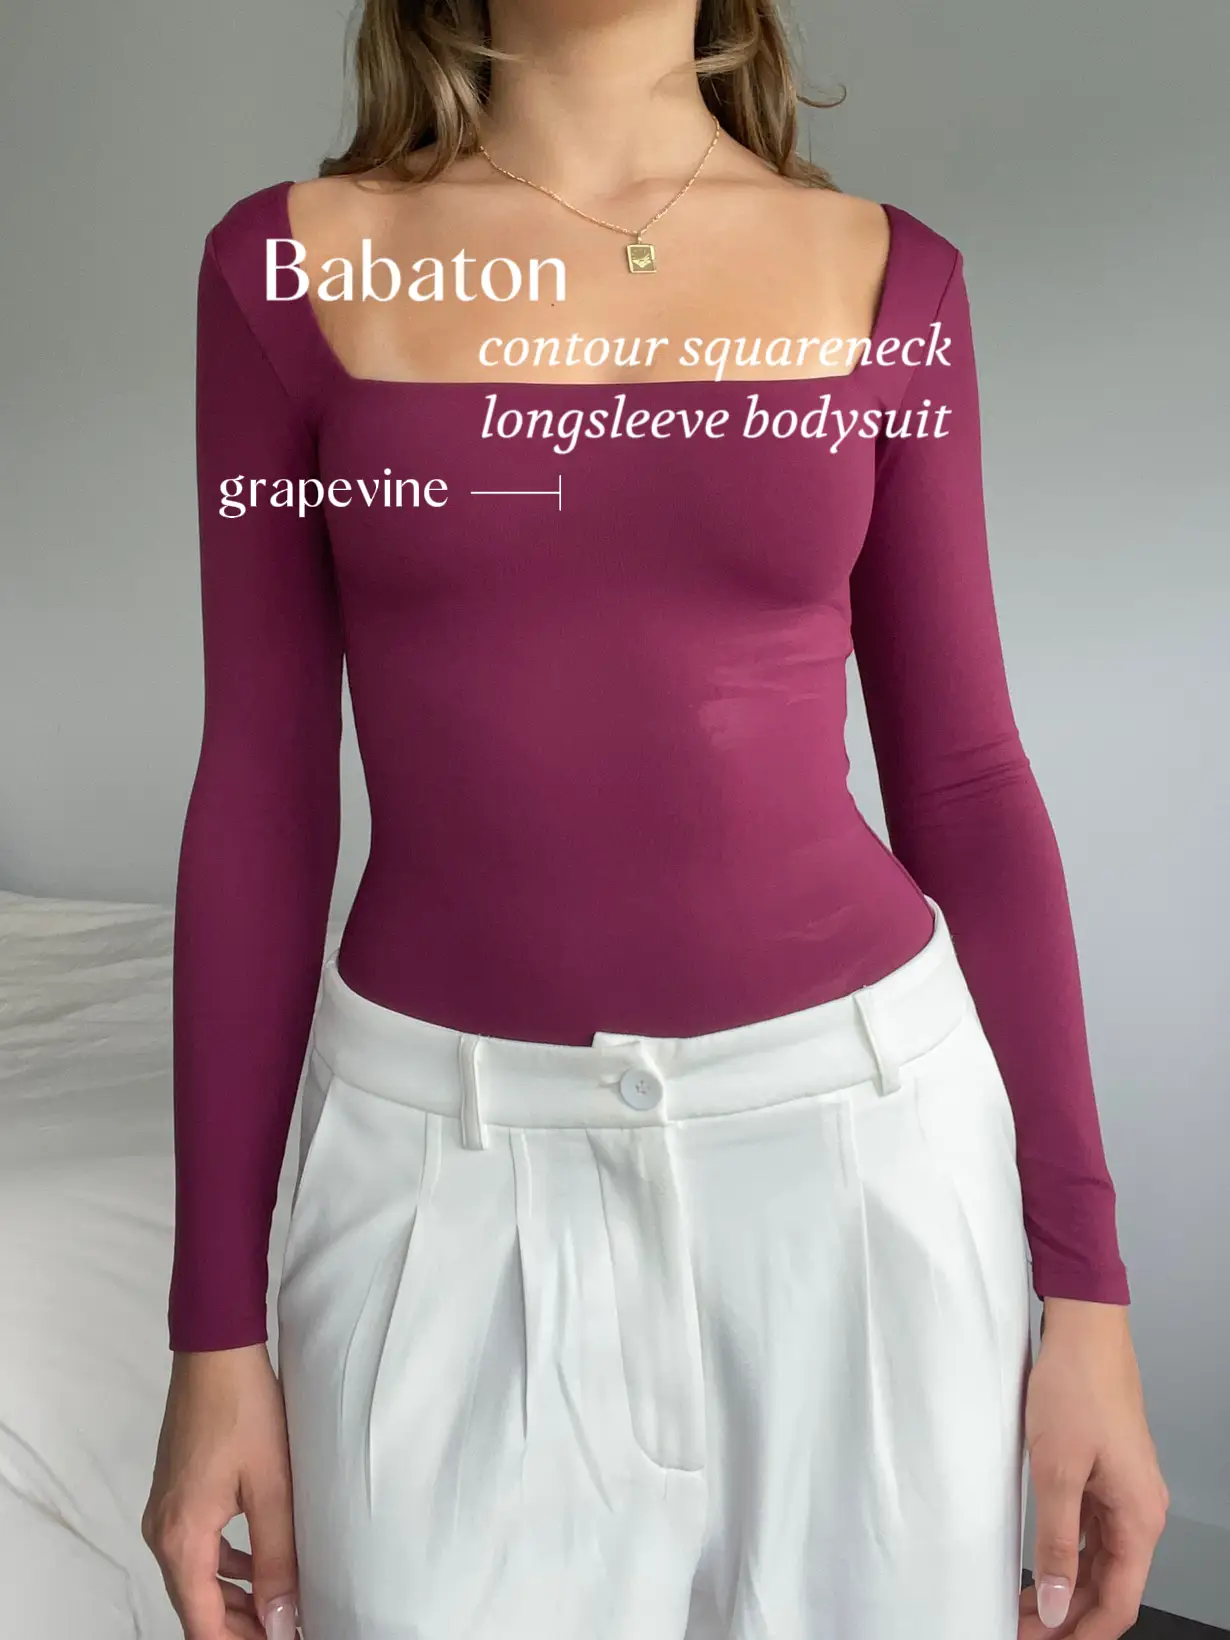 50% OFF Babaton Contour Skirt